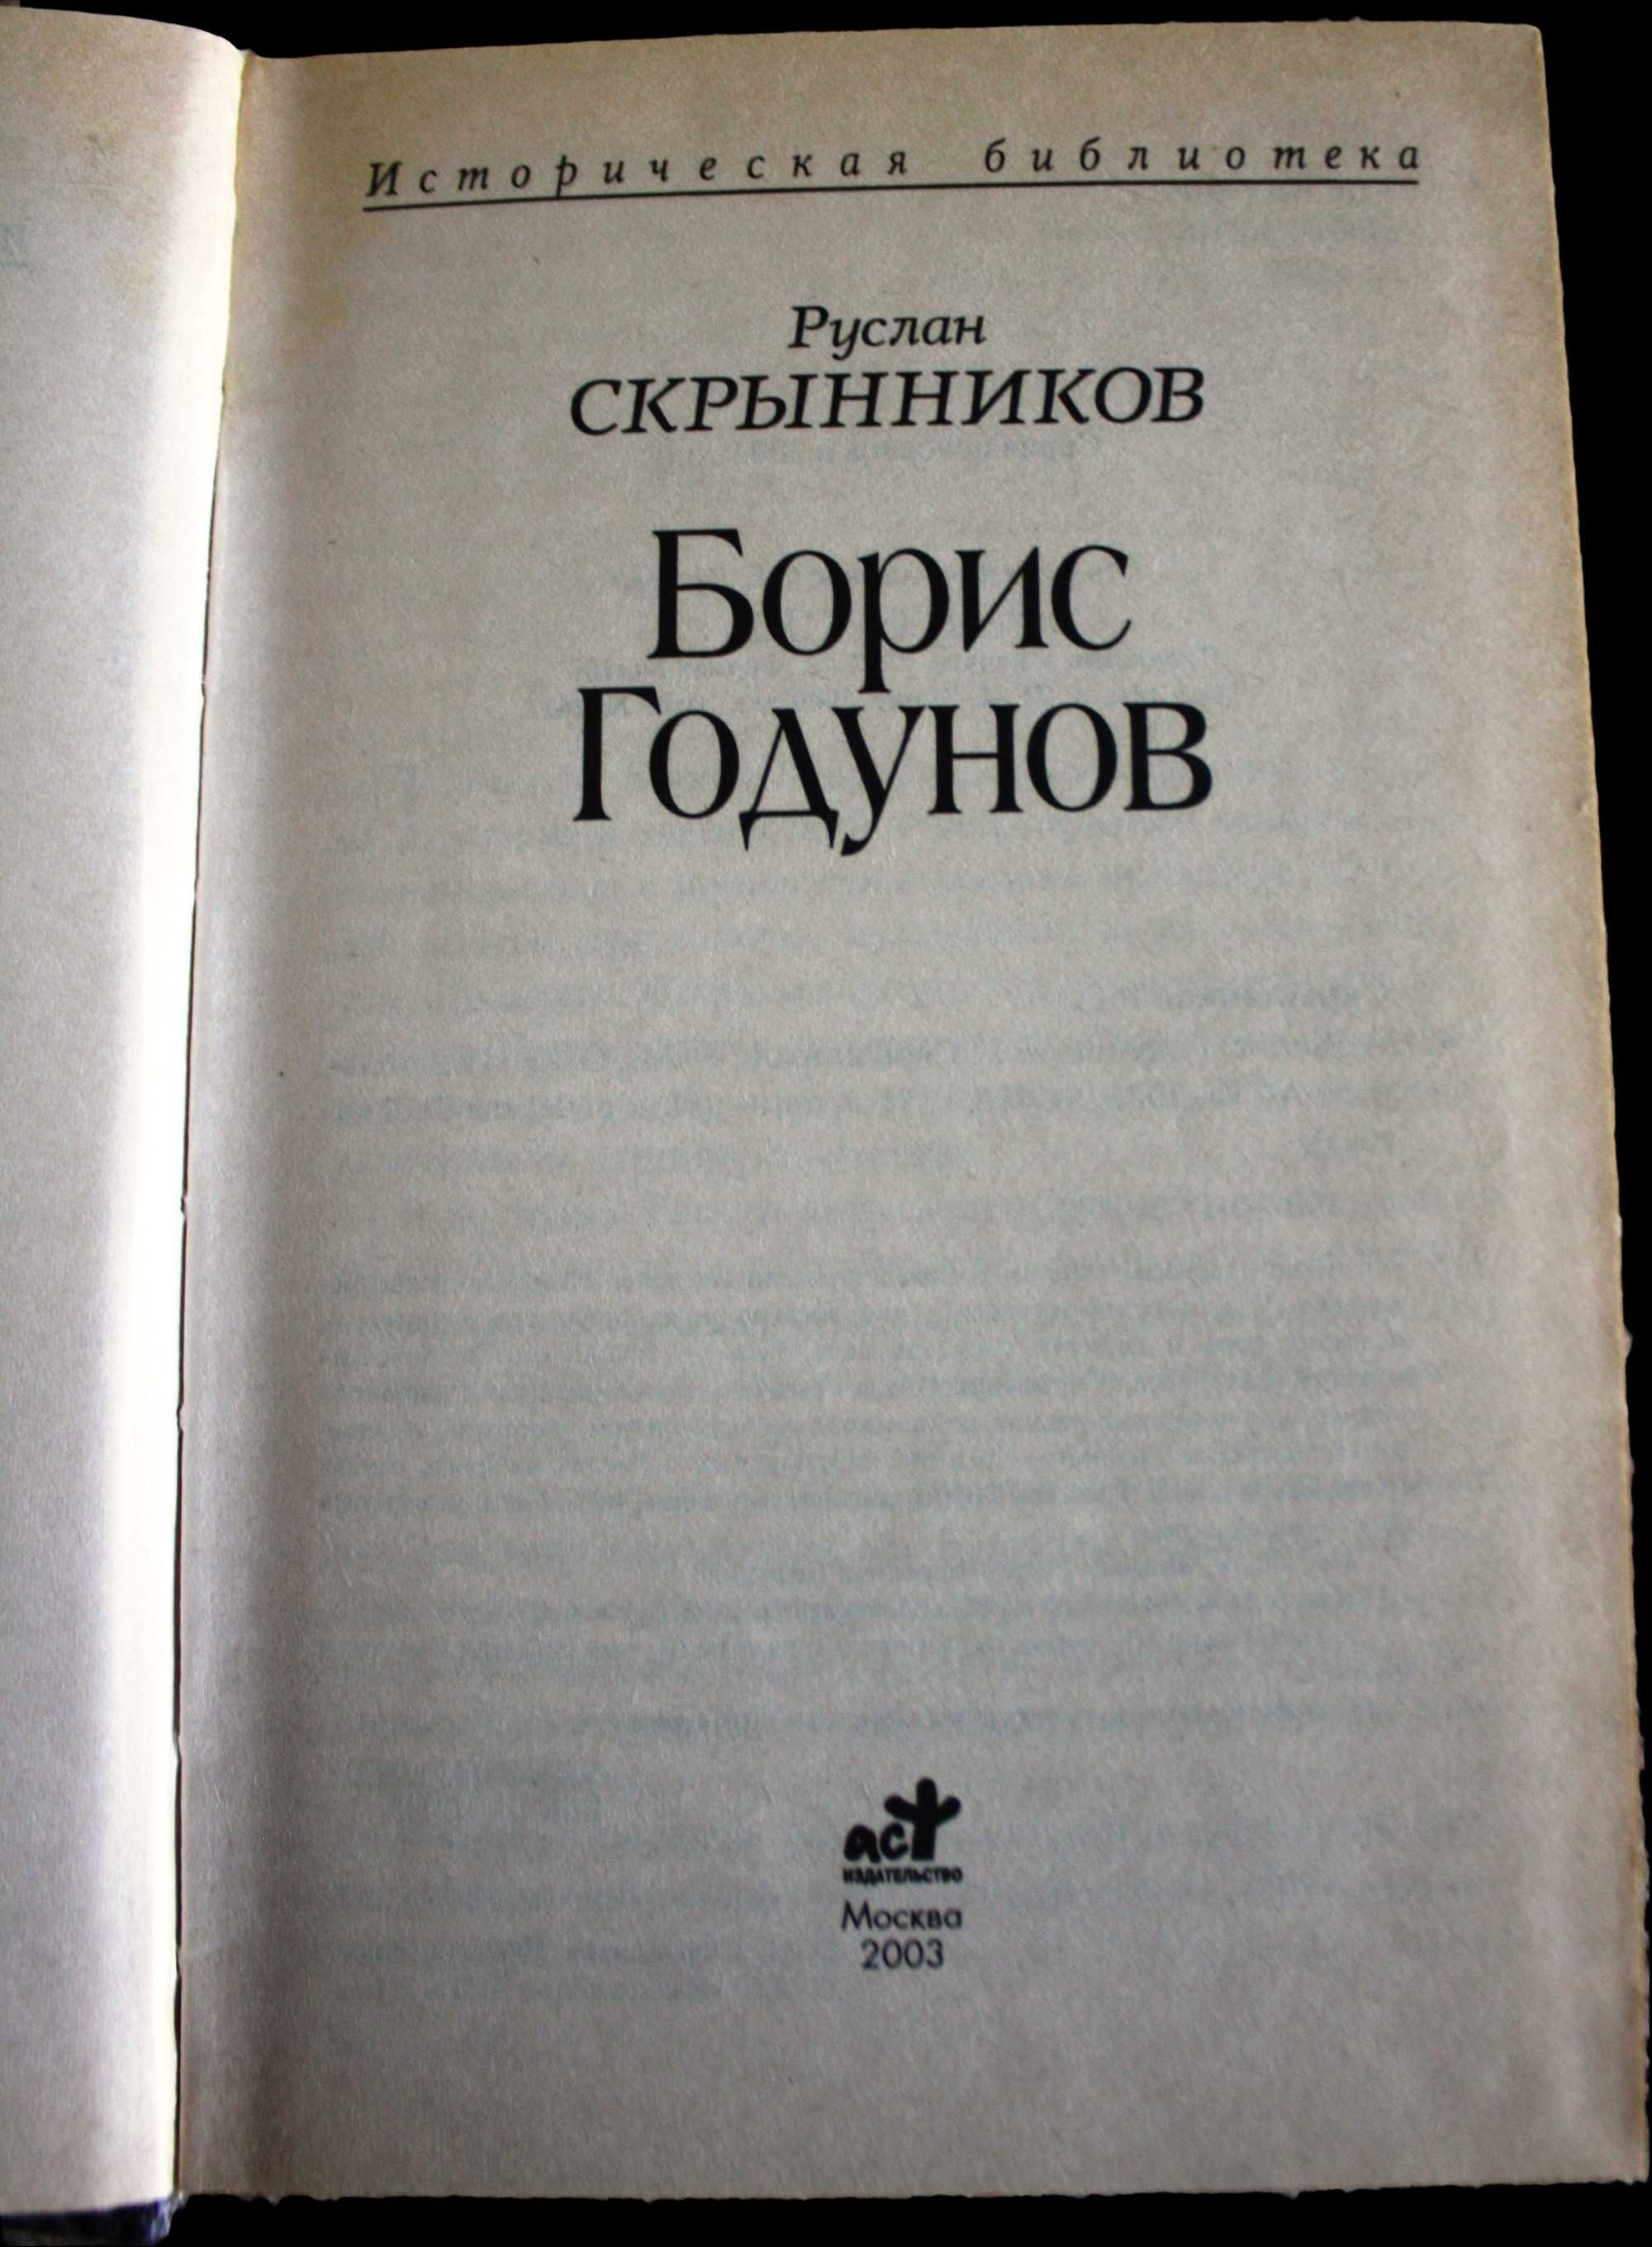 Книга “Борис Годунов” Руслана Скрынникова